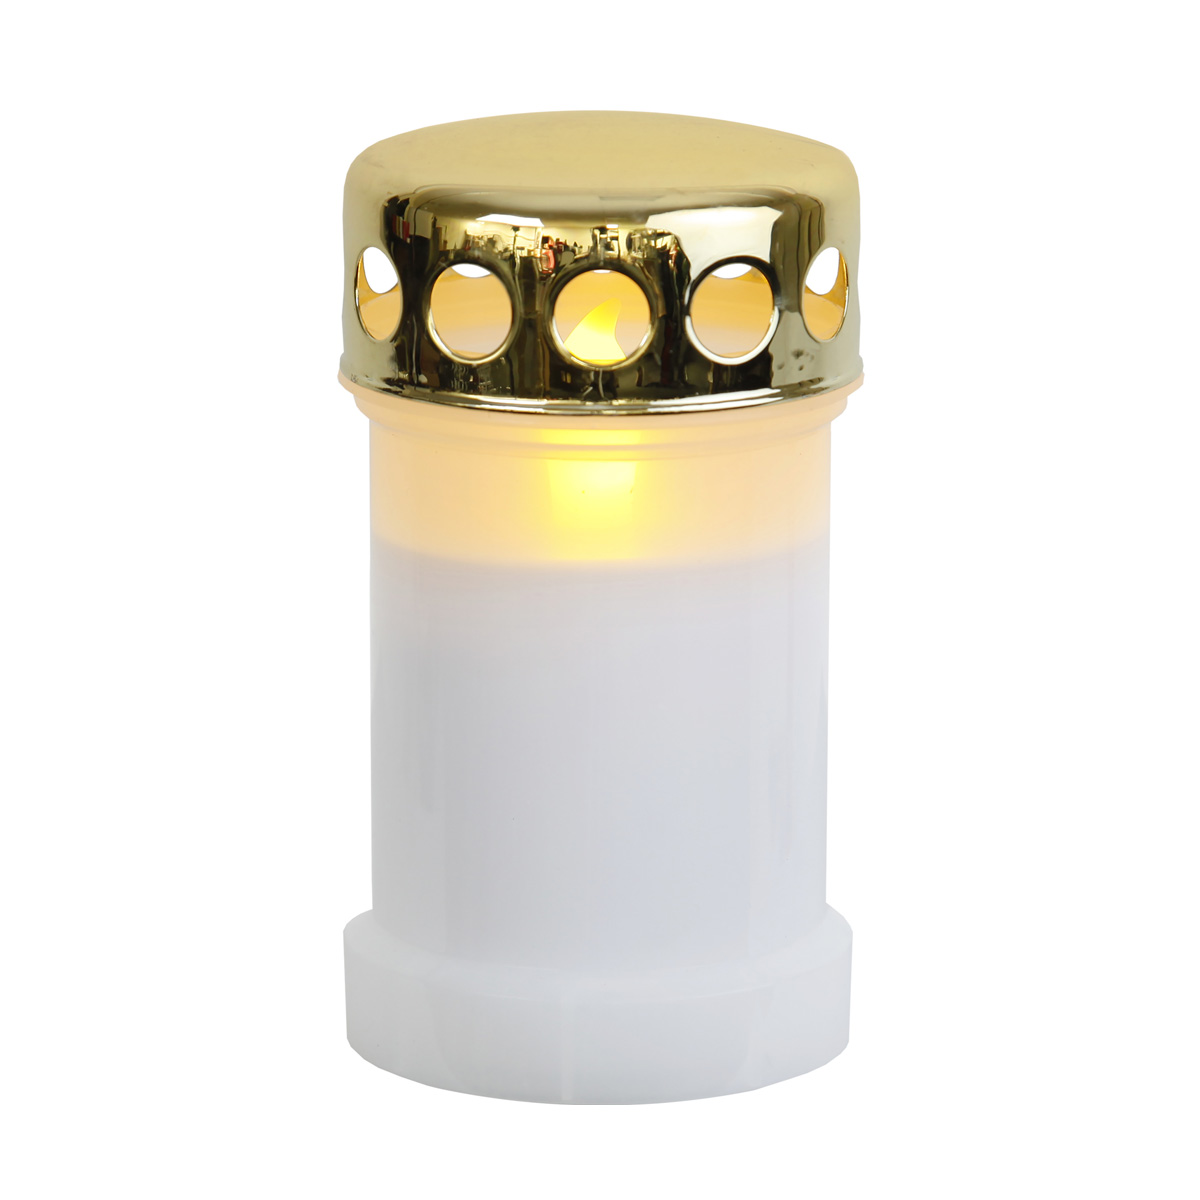 LED Novenkerze Serene - Grabkerze - flackernde gelbe LED - H: 14cm - weiß/gold - 12er Set